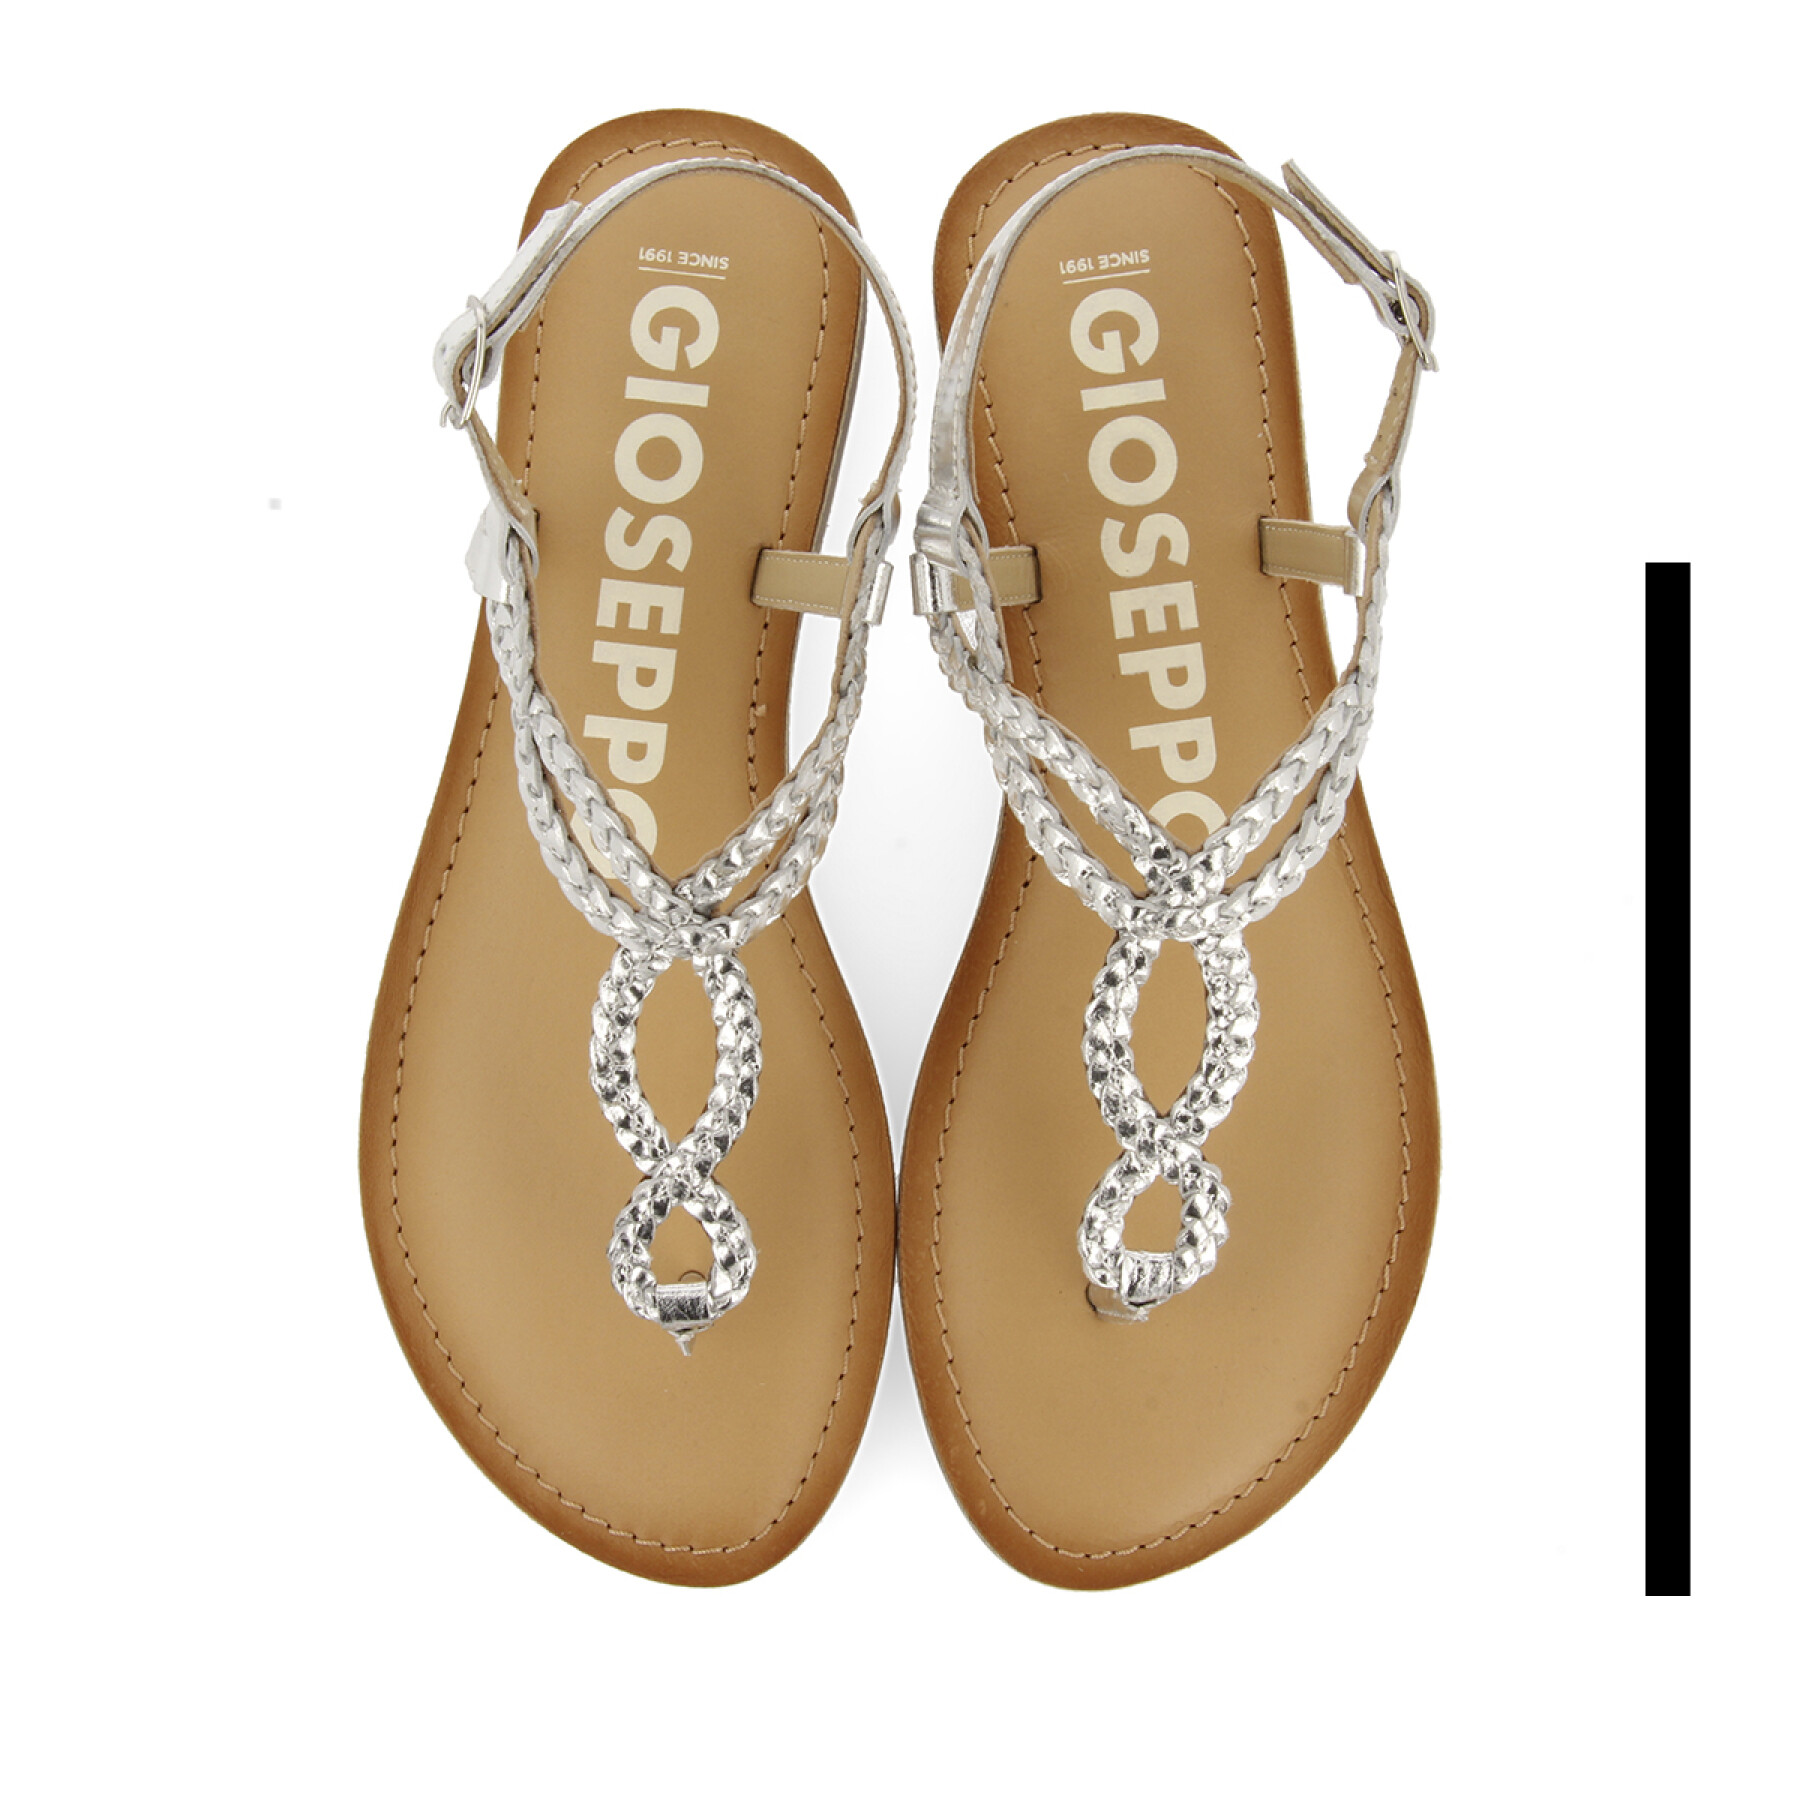 Women's sandals Gioseppo Merignas